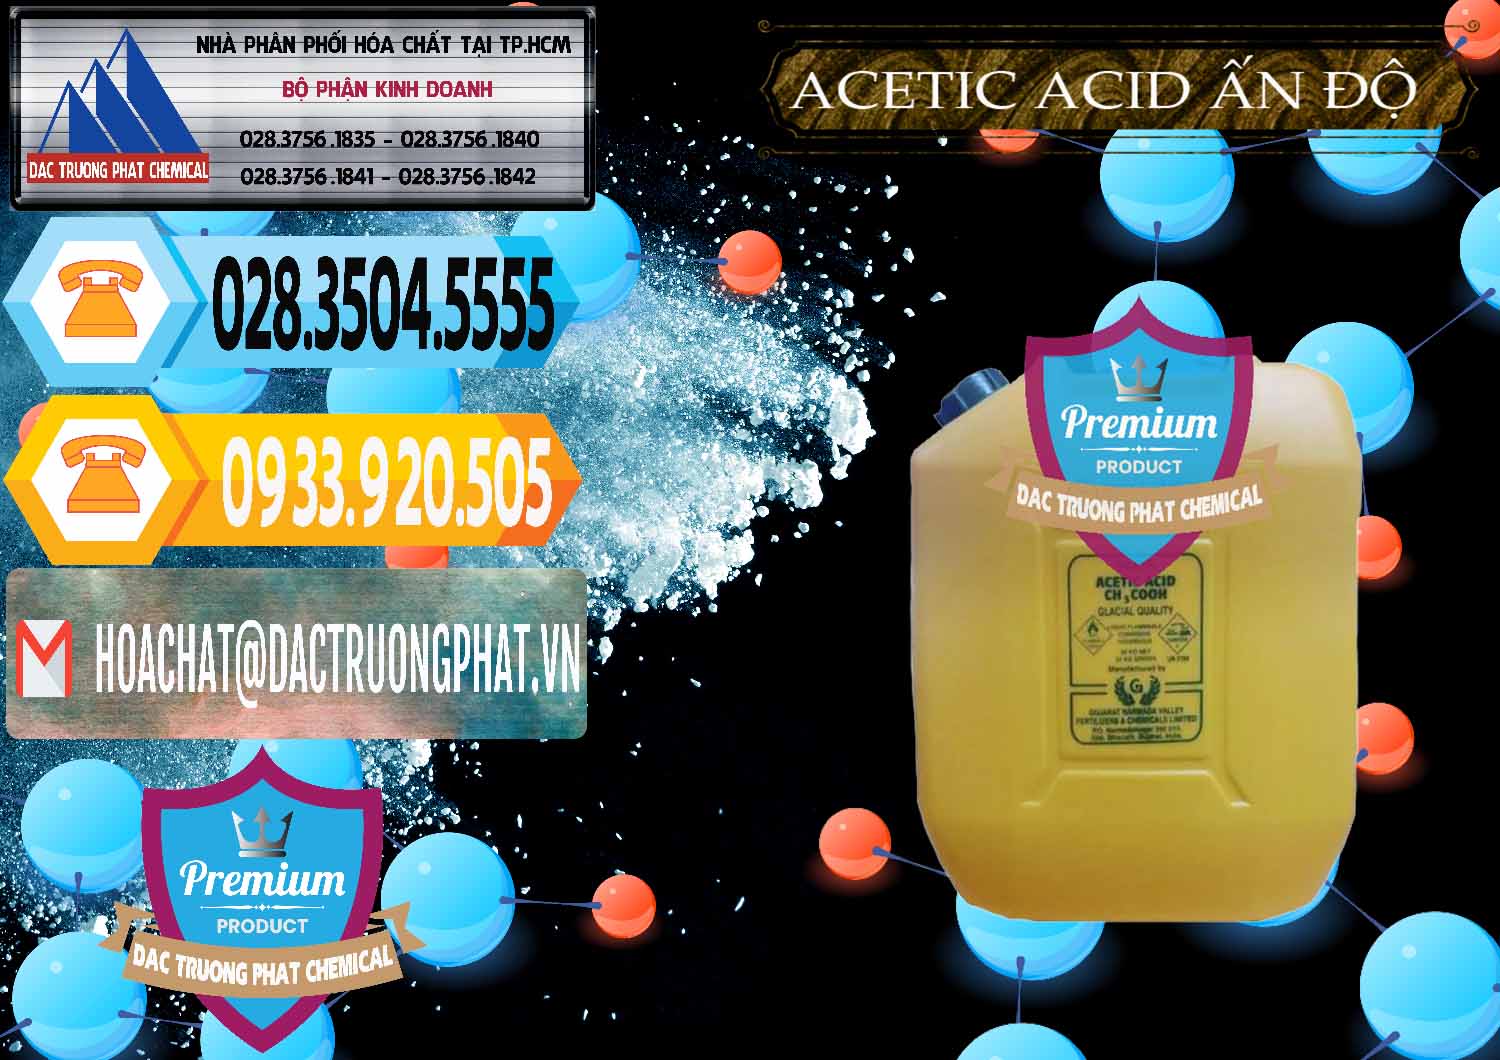 Nơi chuyên cung cấp _ bán Acetic Acid – Axit Acetic Ấn Độ India - 0359 - Cty cung ứng ( phân phối ) hóa chất tại TP.HCM - hoachattayrua.net